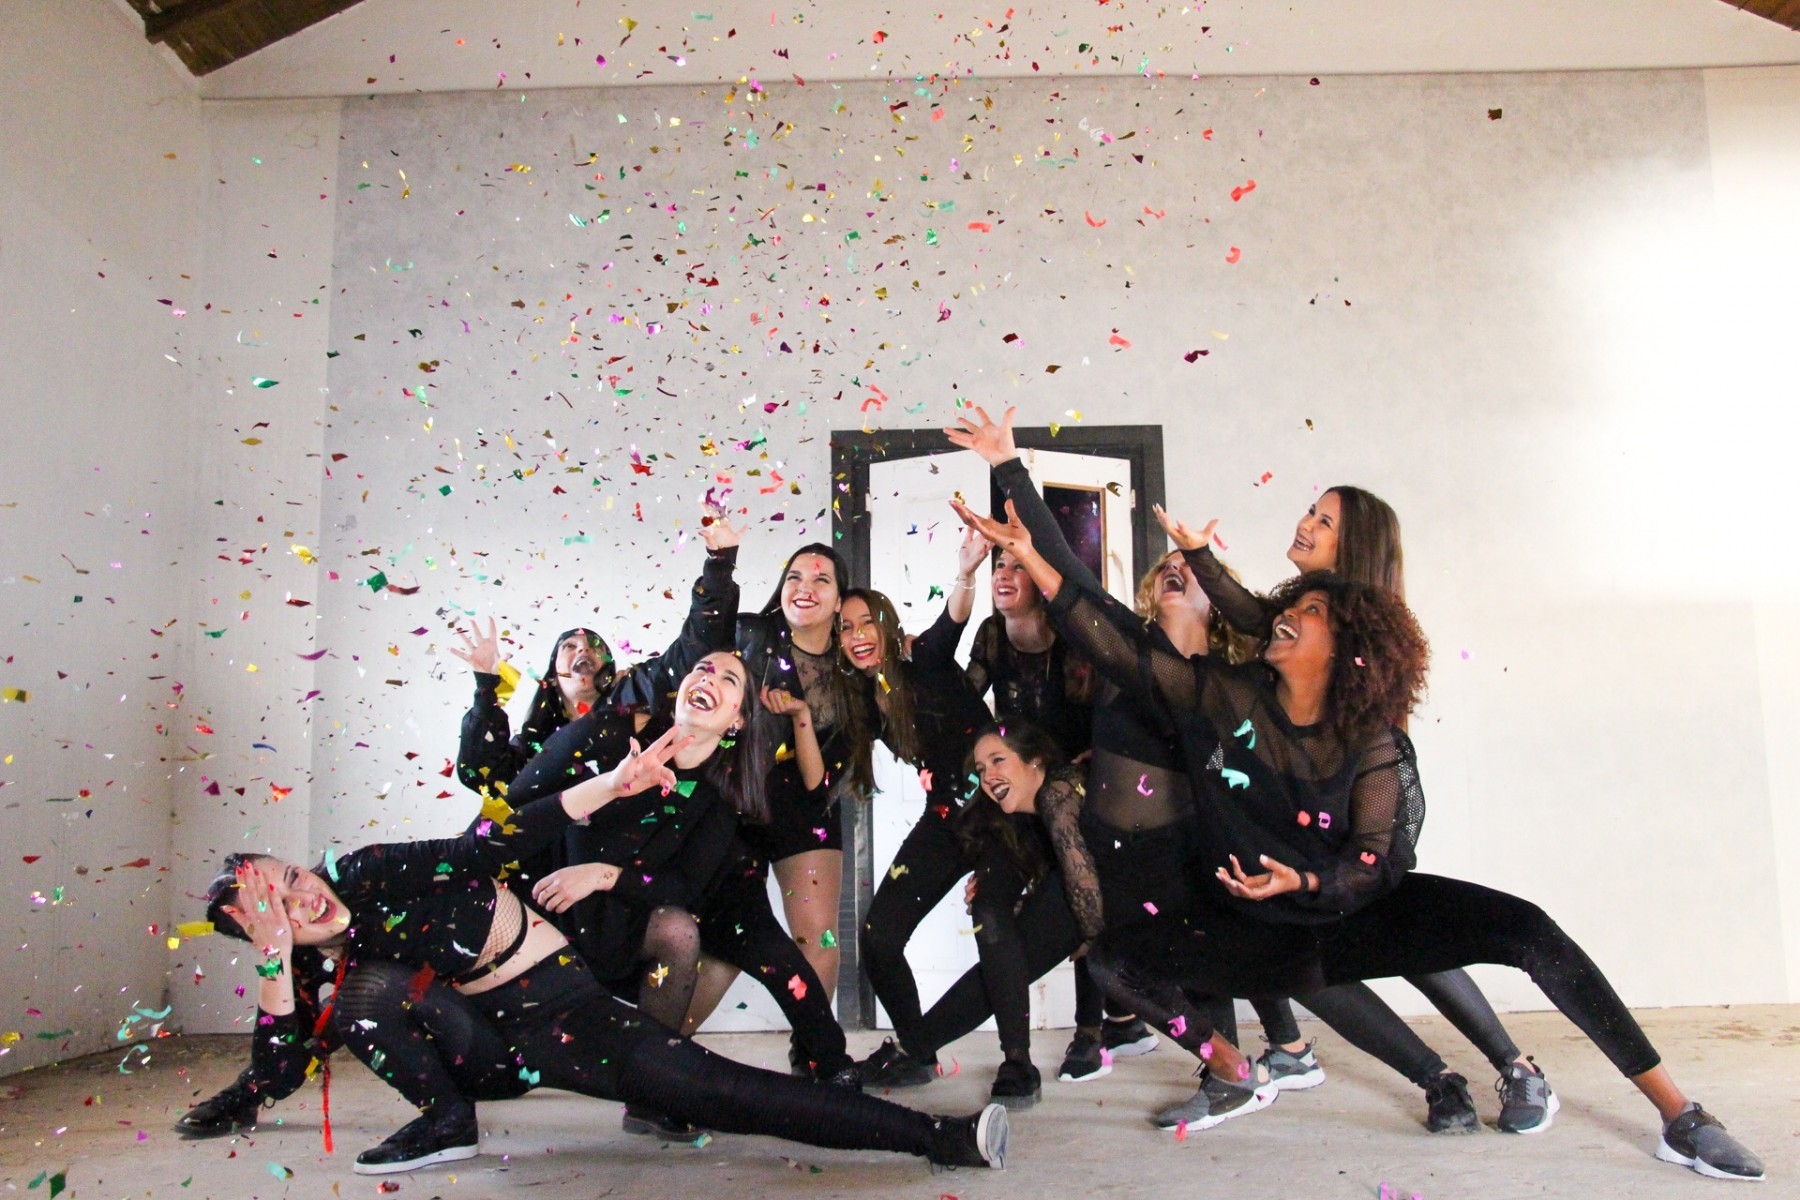 ADA - Academia de Dança do Algarve